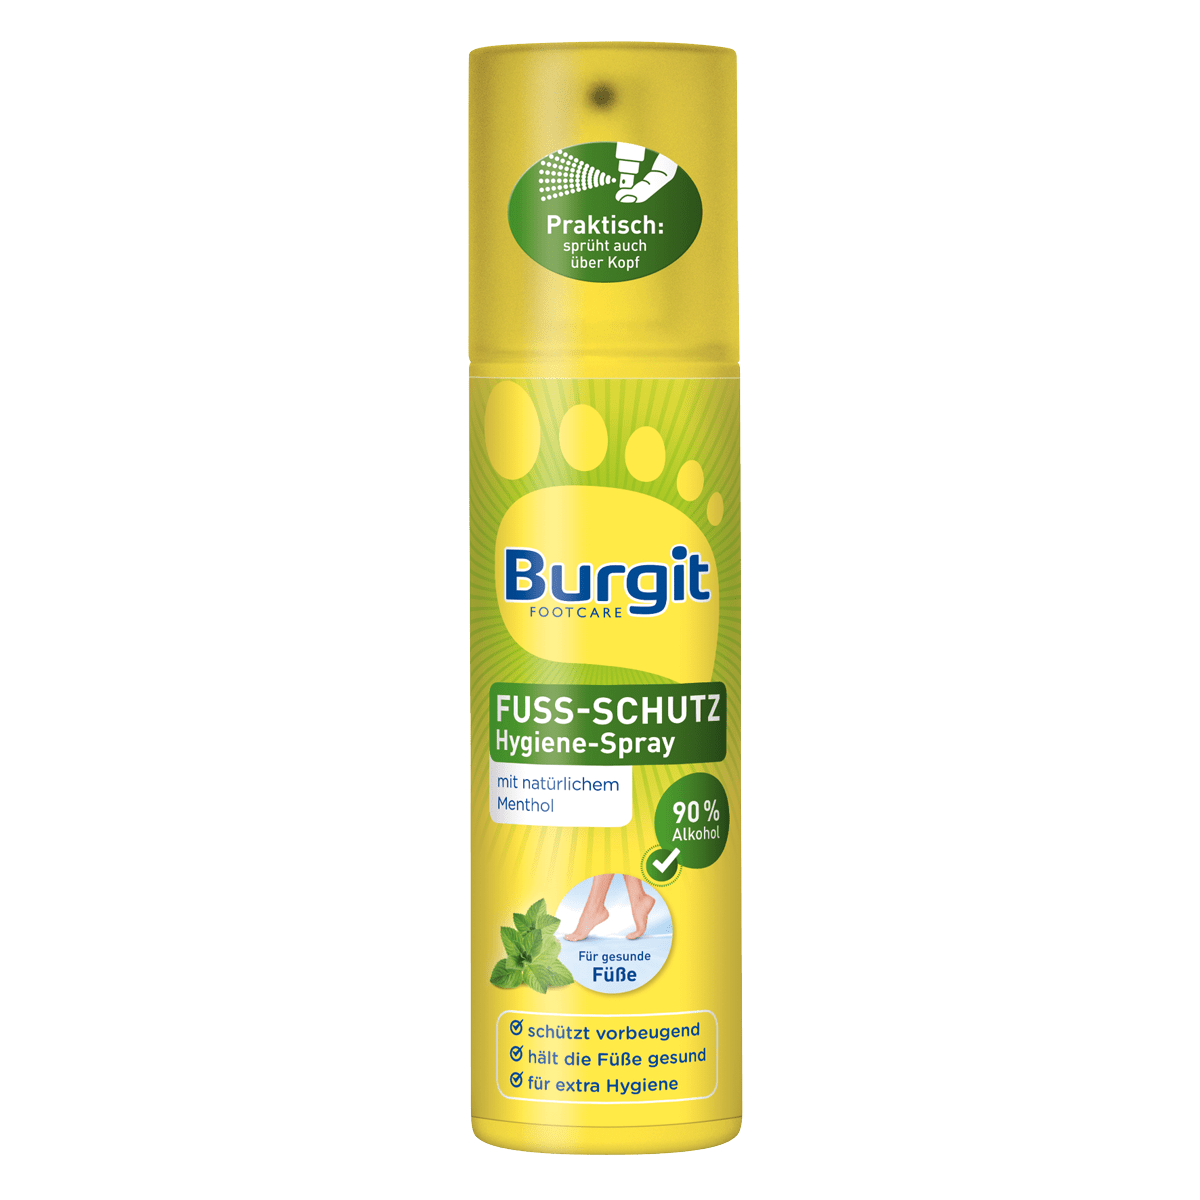 BURGIT spray protettivoIGIENE per piedi